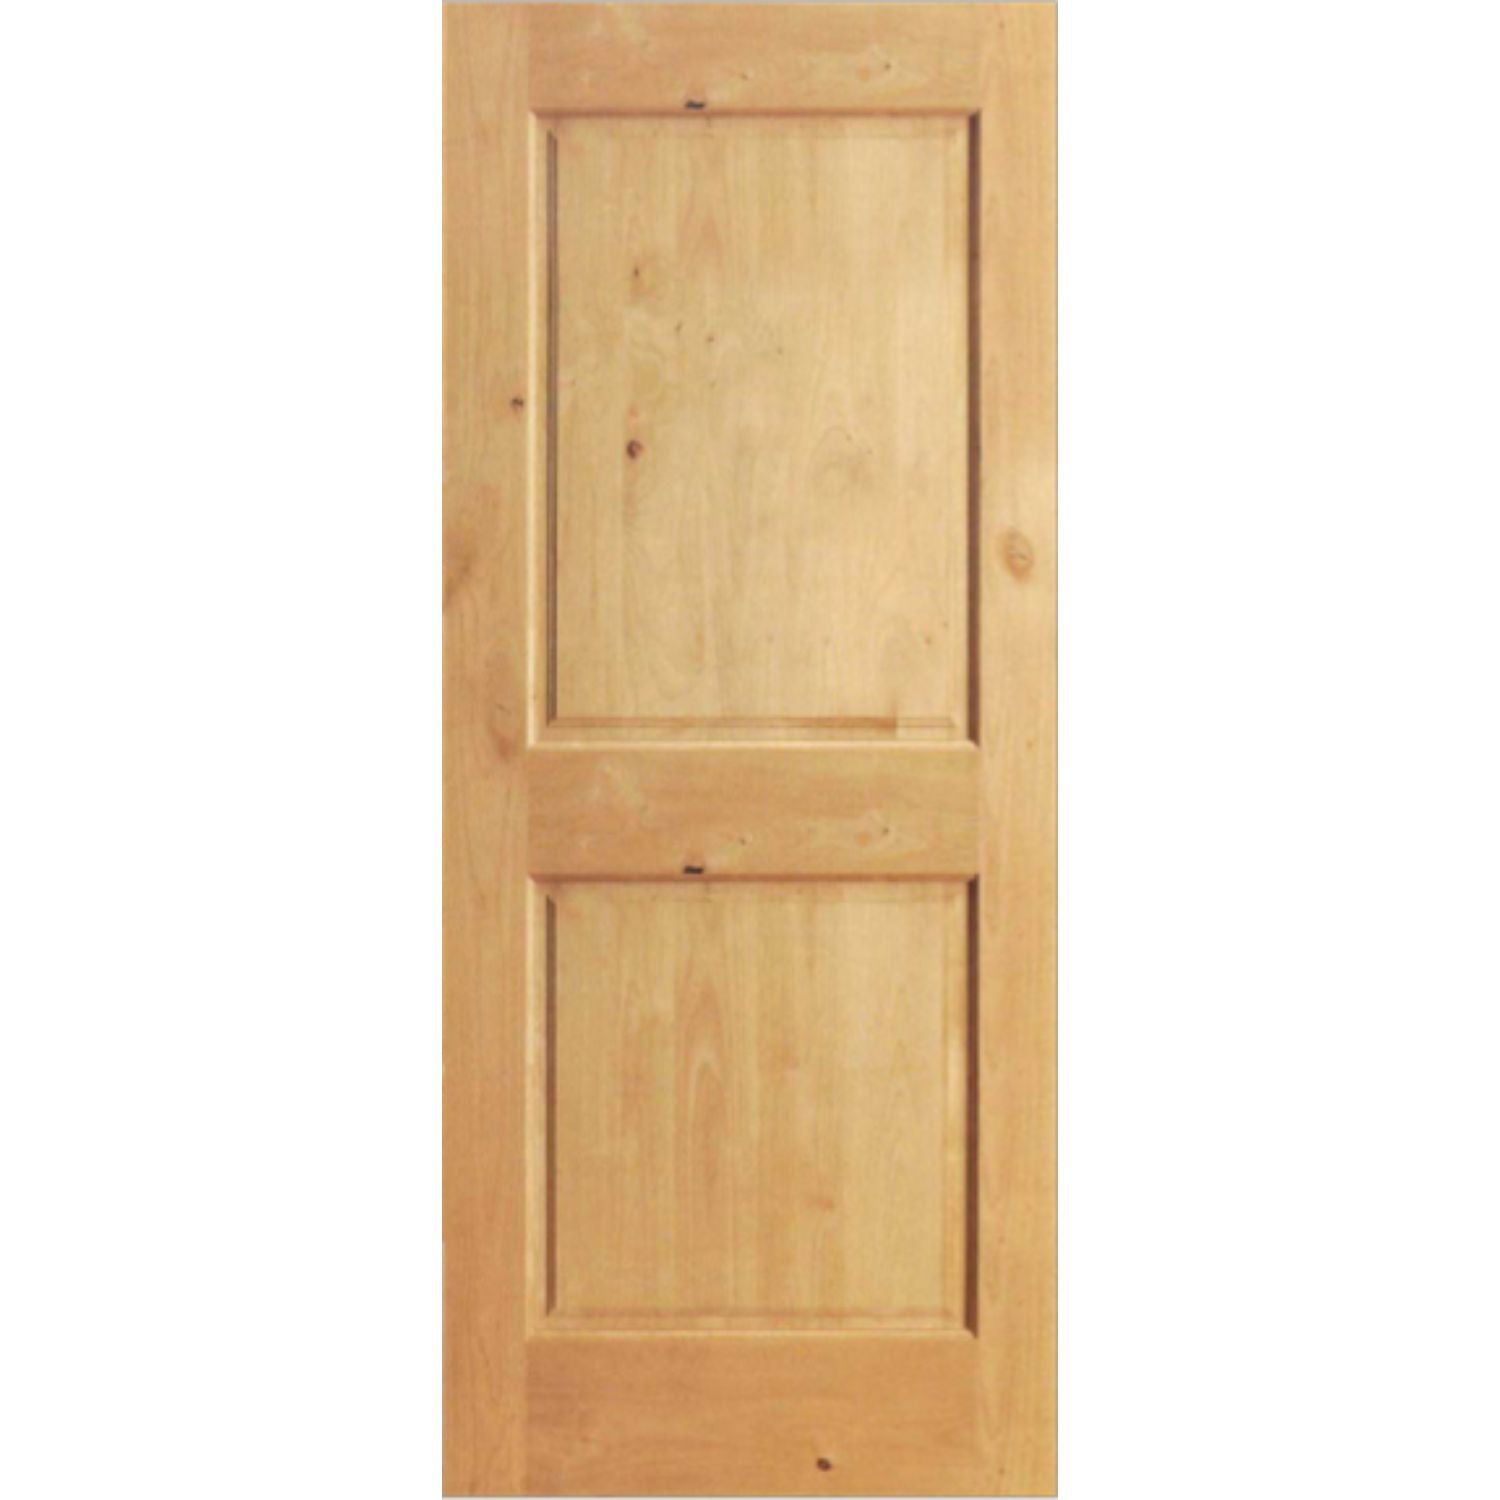 Custom Two Panel Door Project – total 4 Doors :